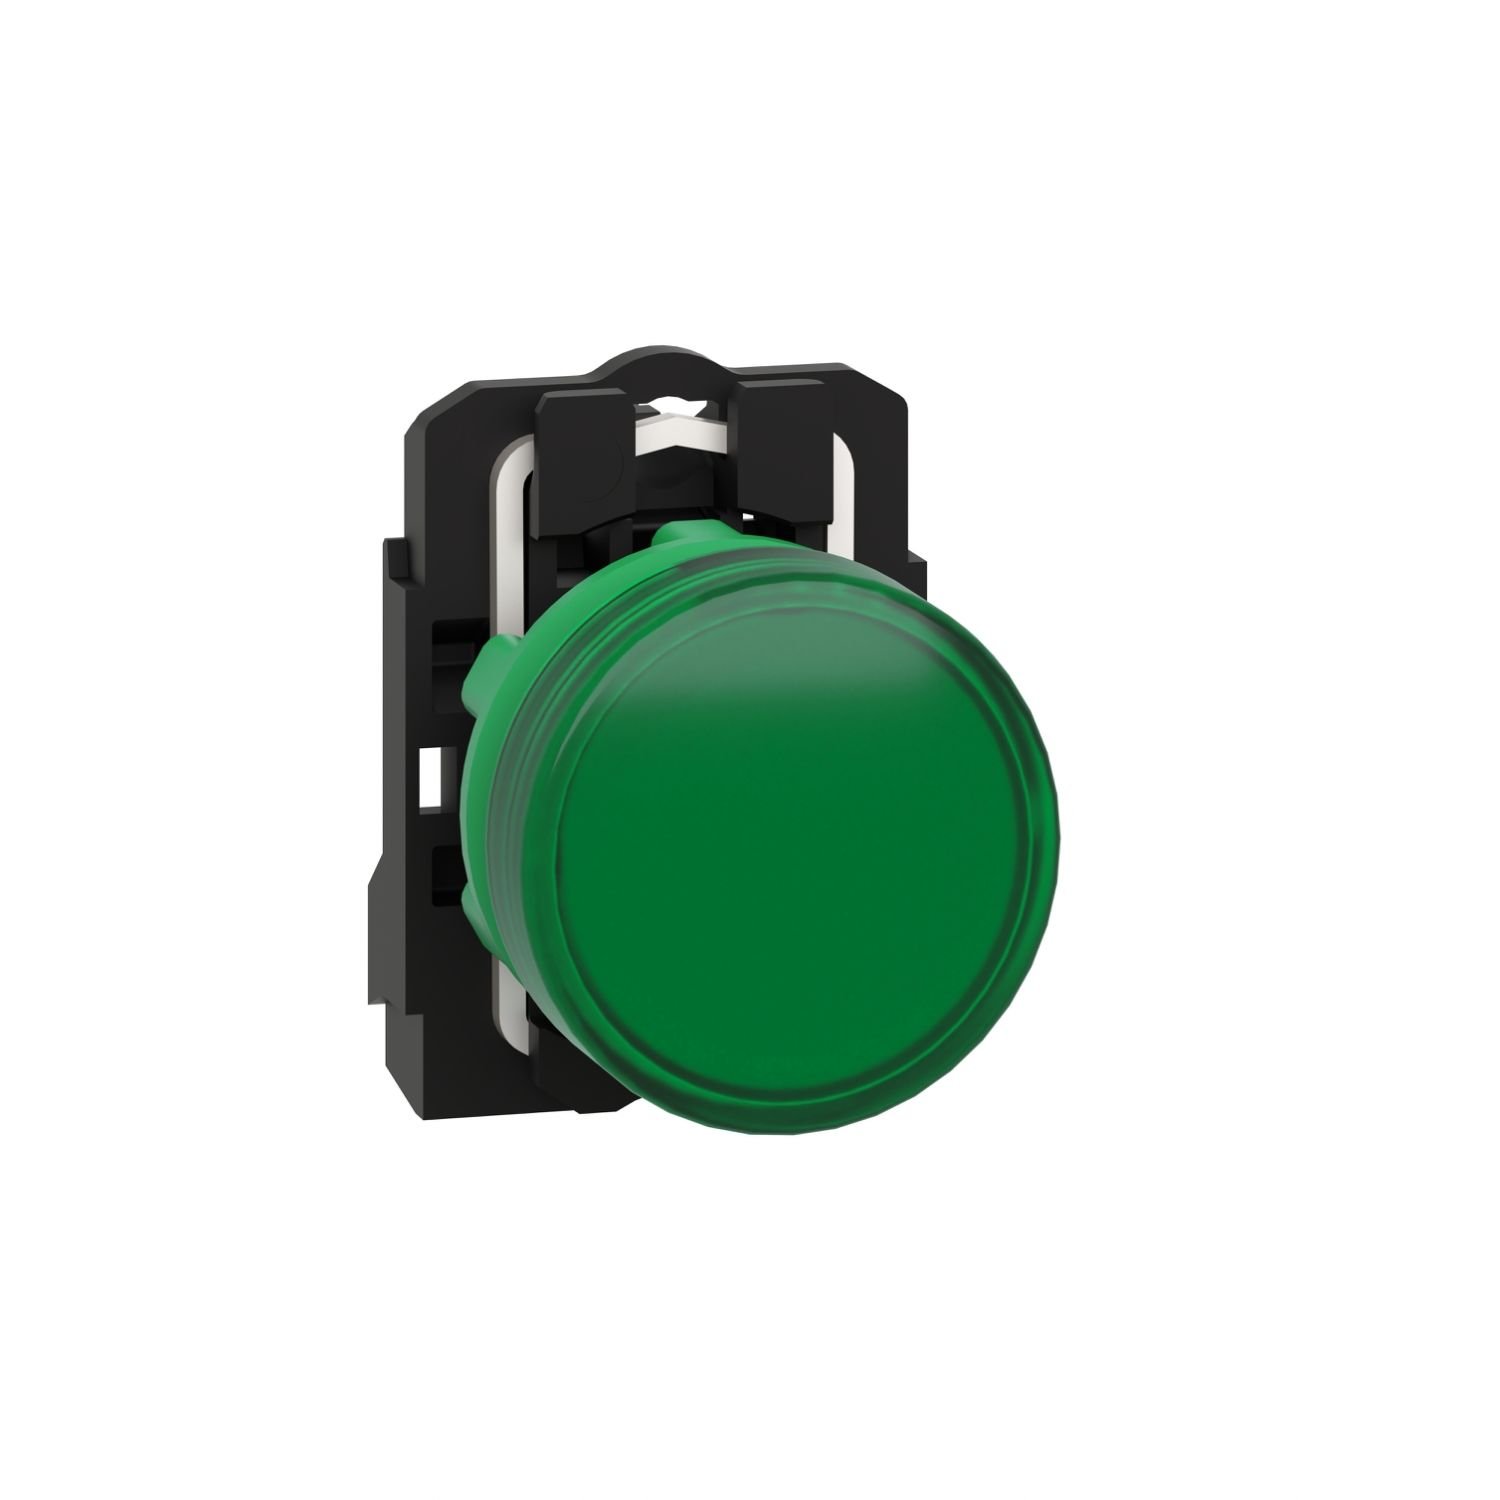 XB5AVM3 Pilot light, plastic, green, Ø22, plain lens with integral LED, 230...240 V AC